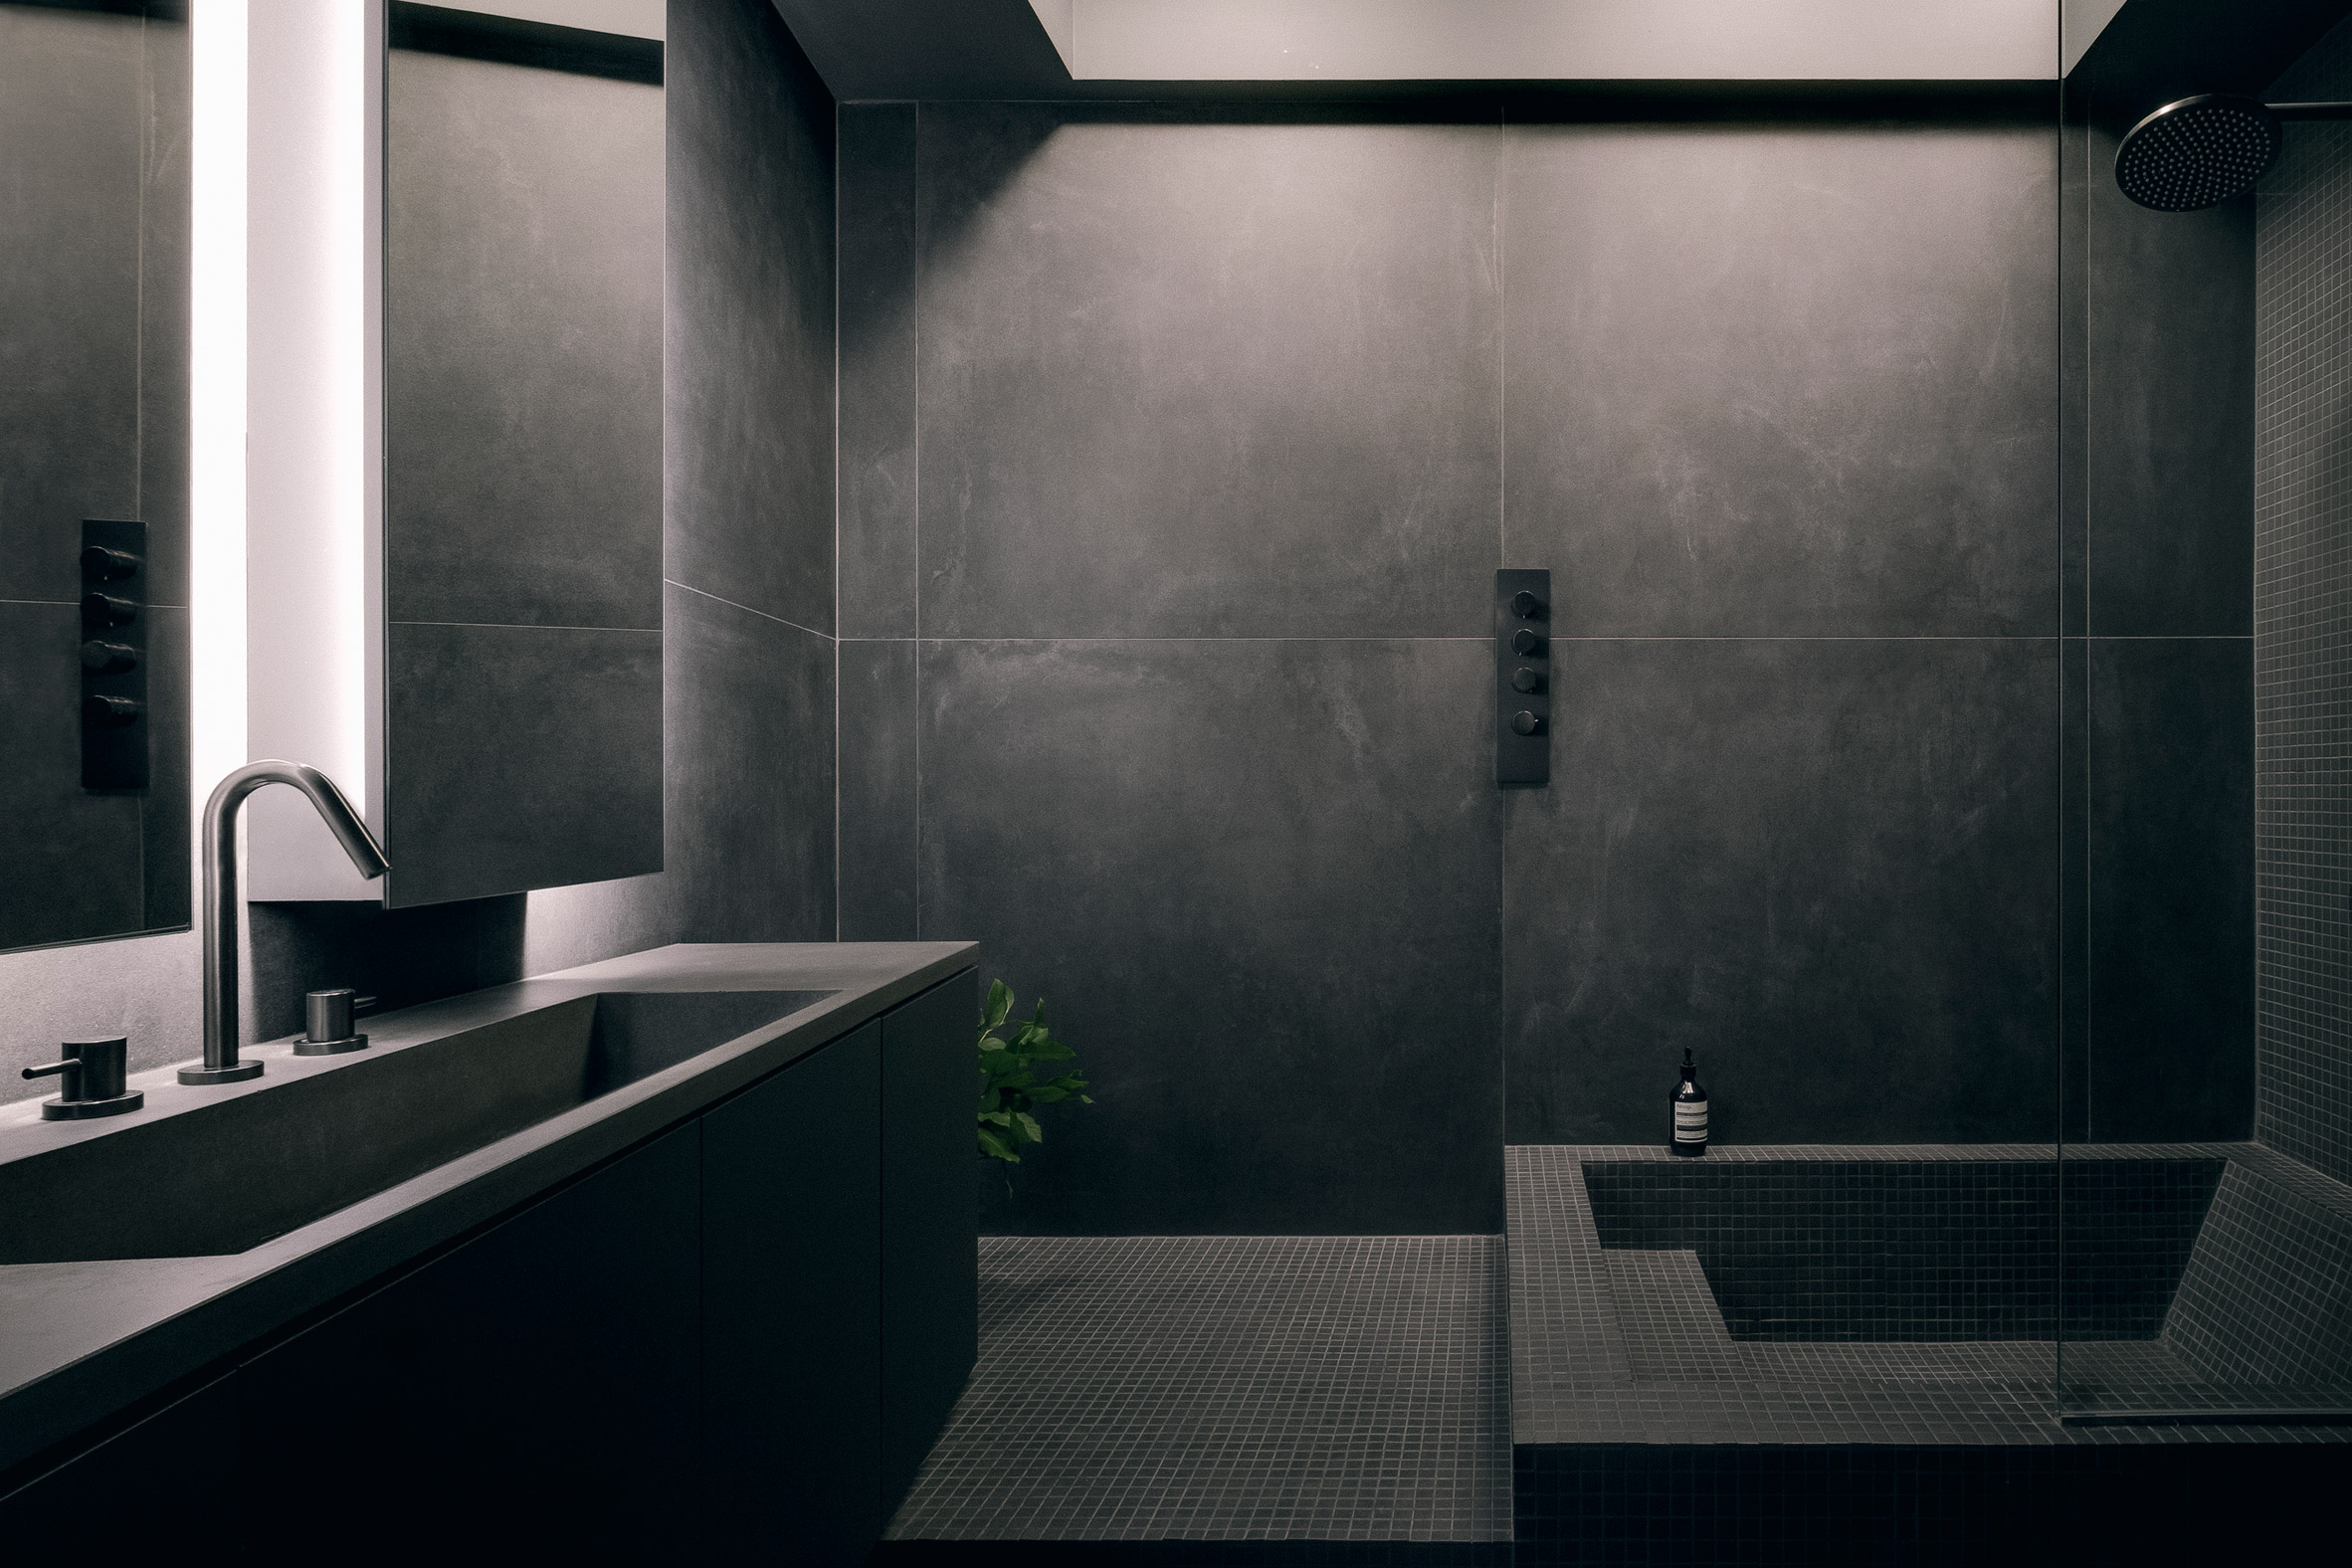 Future Simple Studio designed a moody grey bathroom